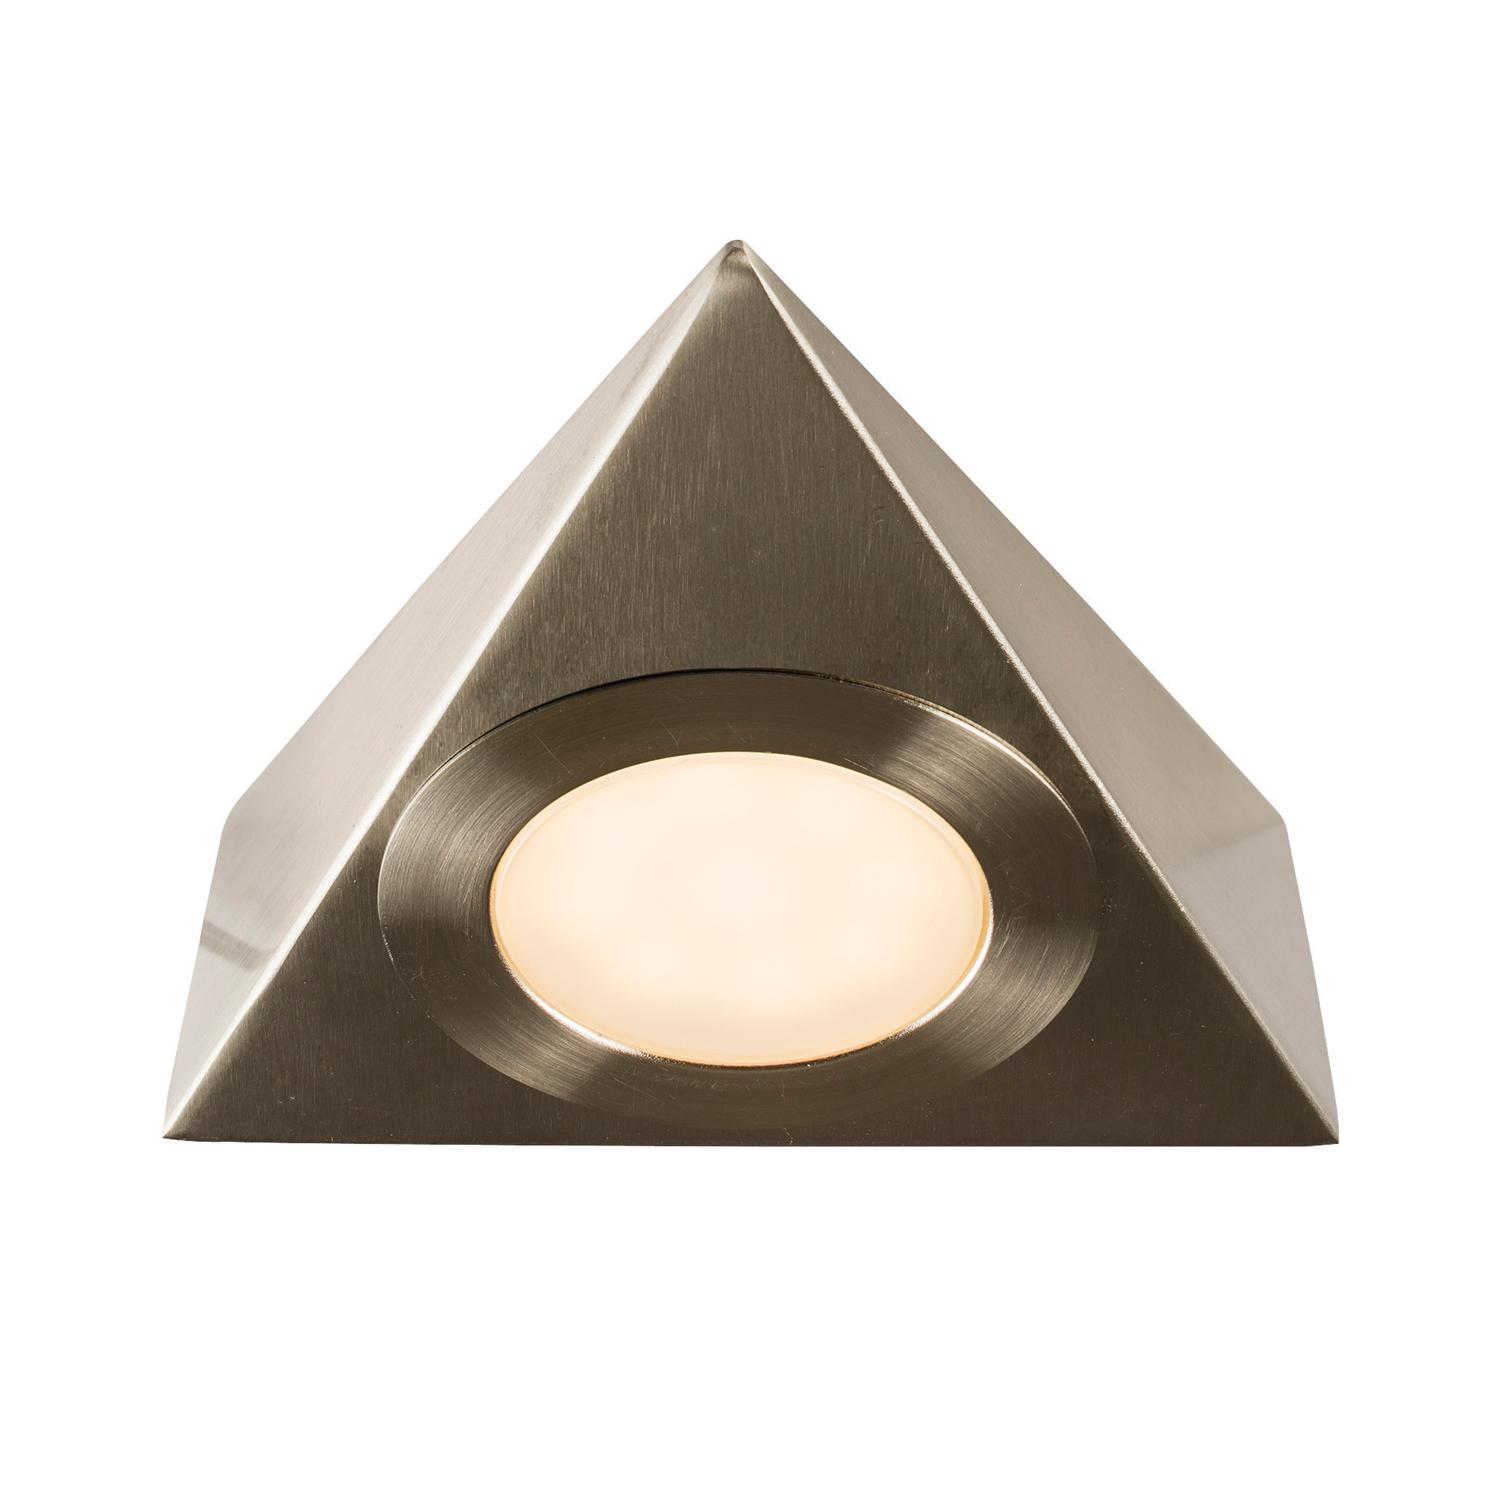 59878 Nyx Single Triangular Led Under Cabinet Light 4574 